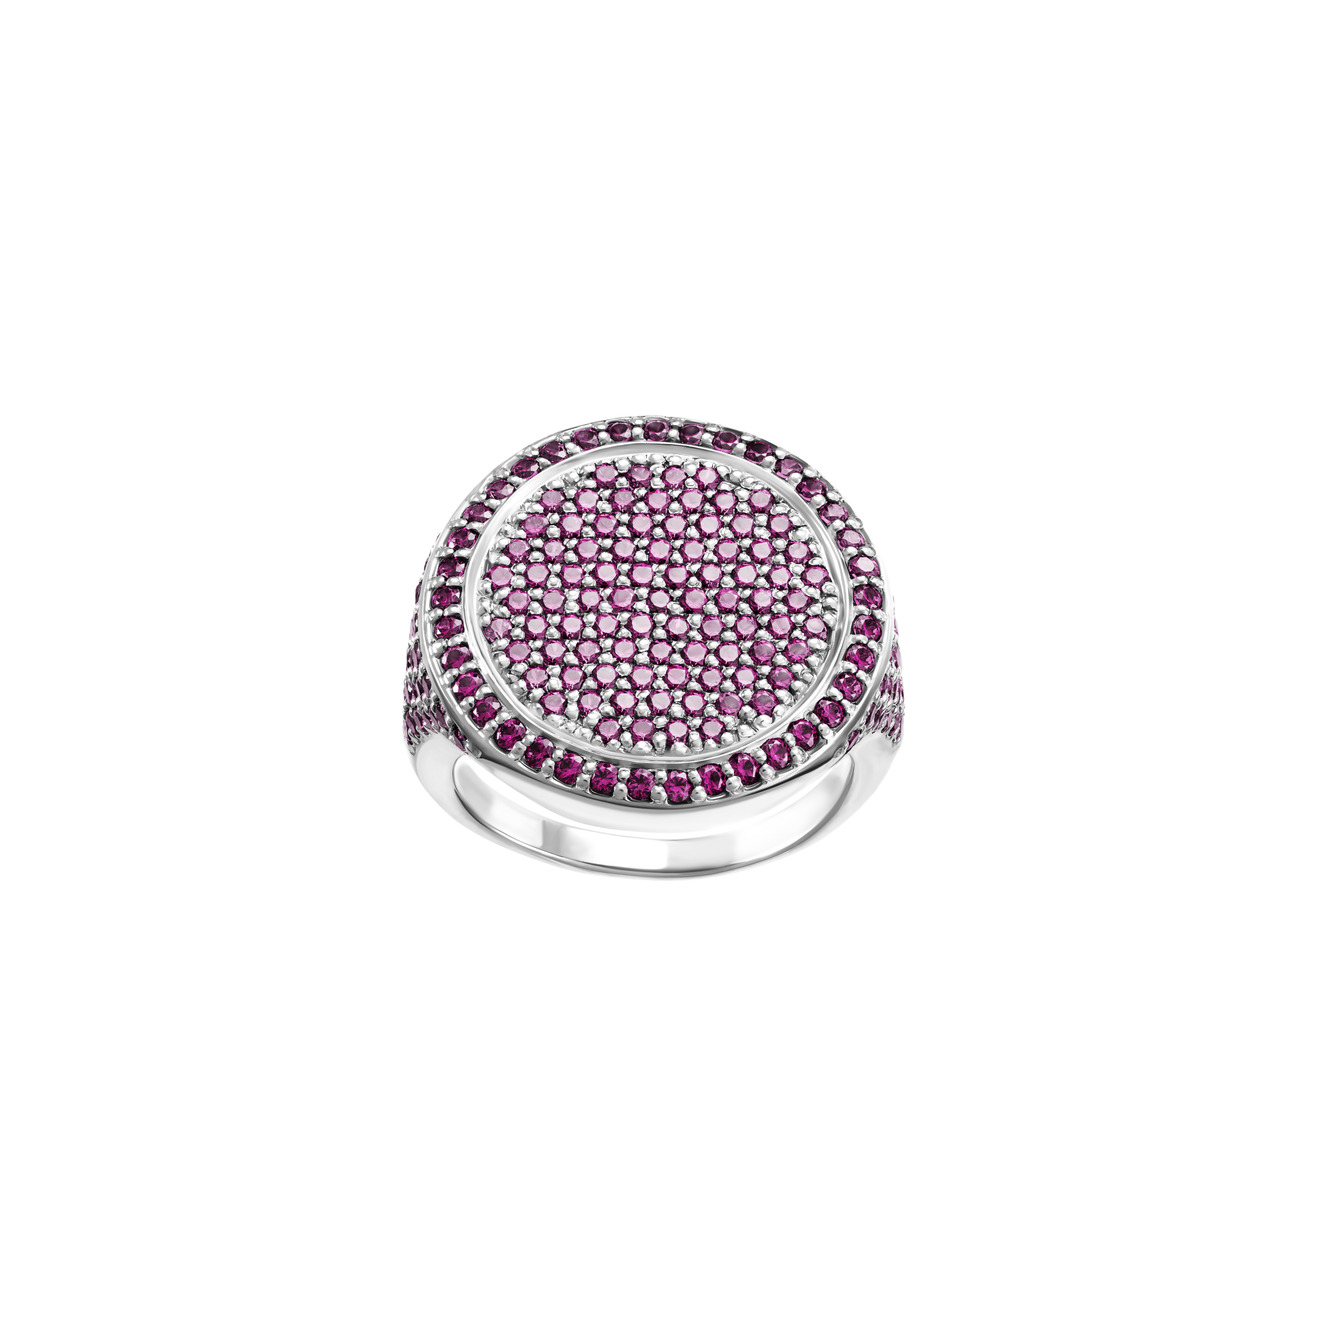 jewlia позолоченные серьги из серебра с розовыми подвесными кристаллами Jewlia Серебристая печатка-круг с розовыми кристаллами